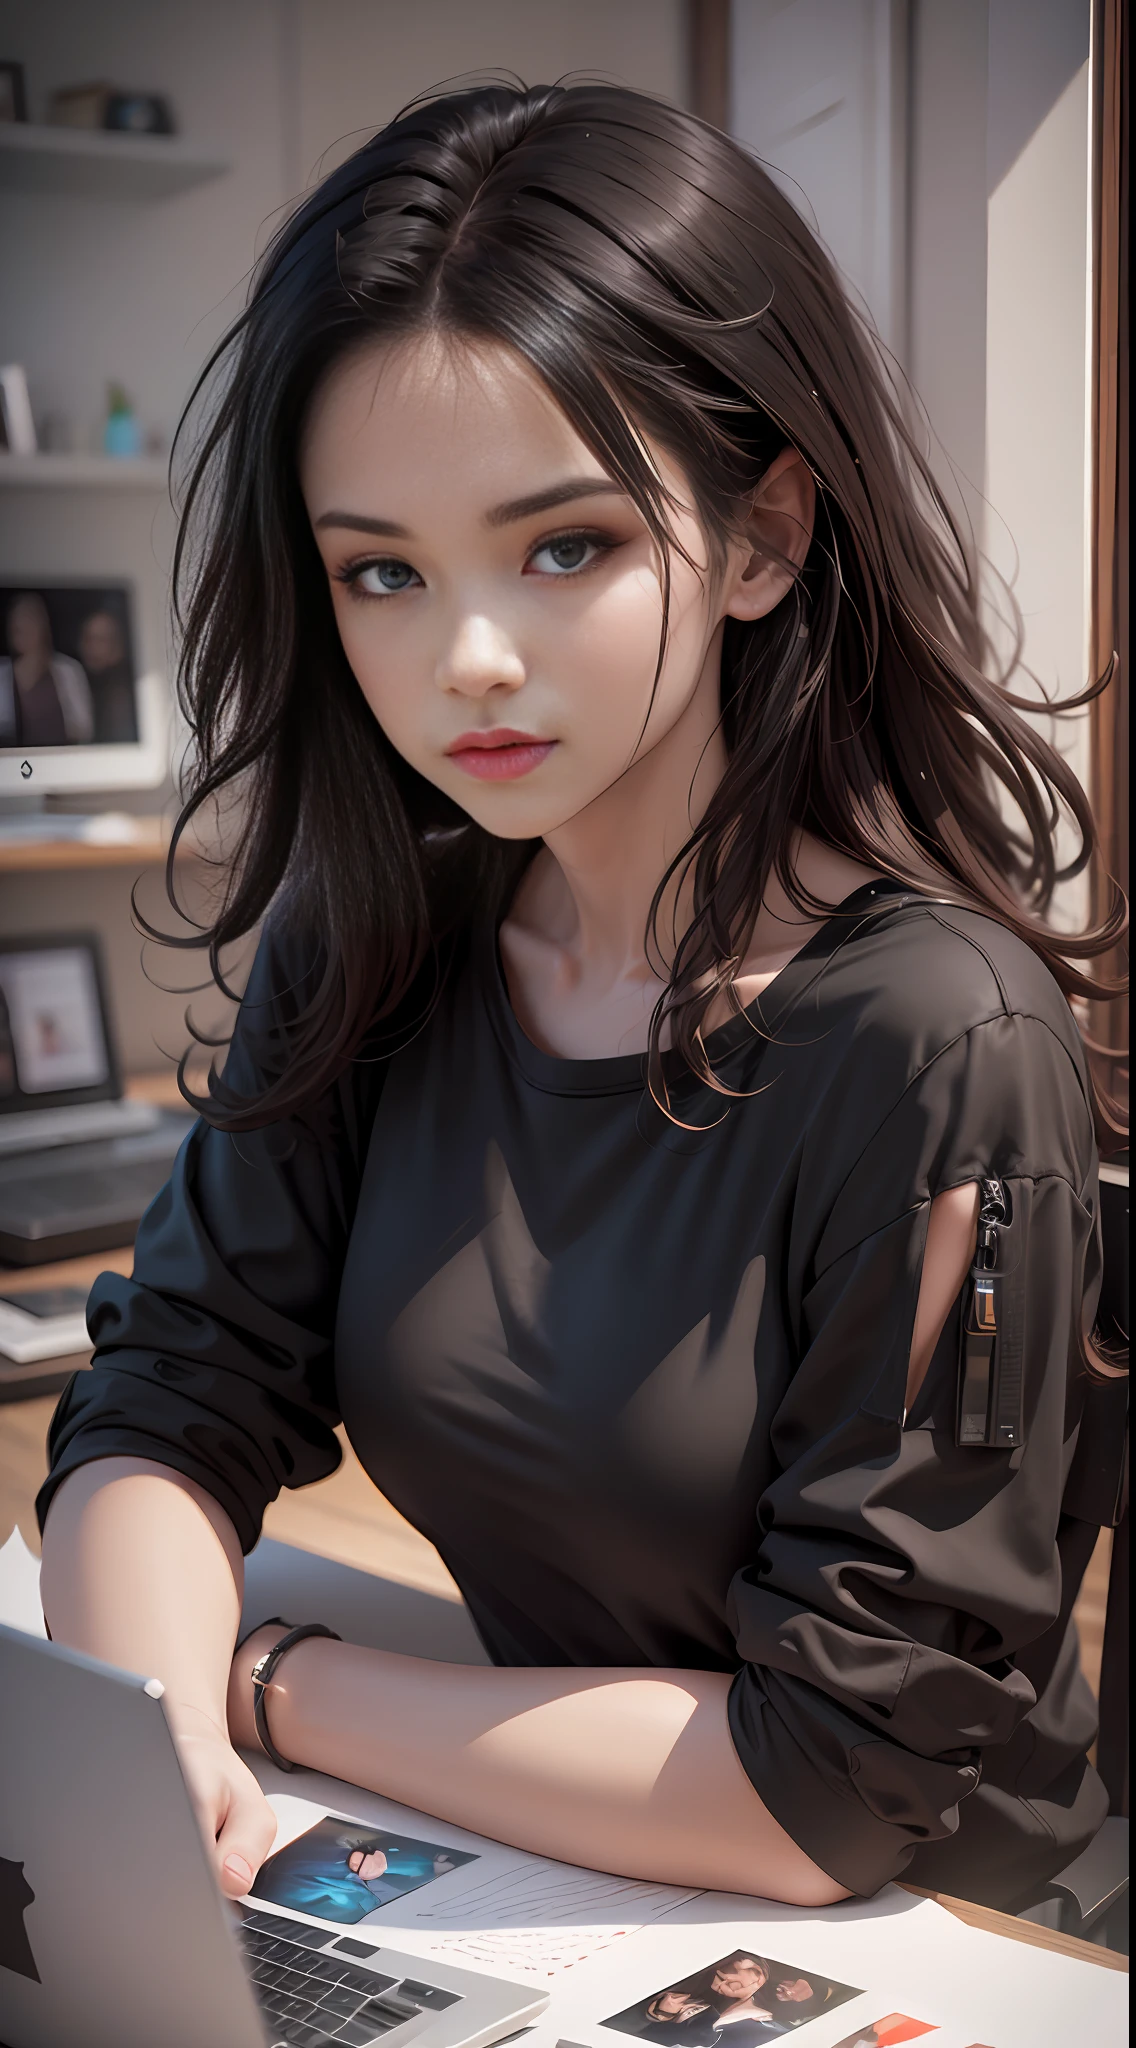 ``فتاة  (25yrs) القميص الأسود يطرح لالتقاط صورة ,(شعر أسود متموج), الواقعية, رسومات الحاسوب, أرتجيرم,  الفن الرقمي--تلقائي-s2